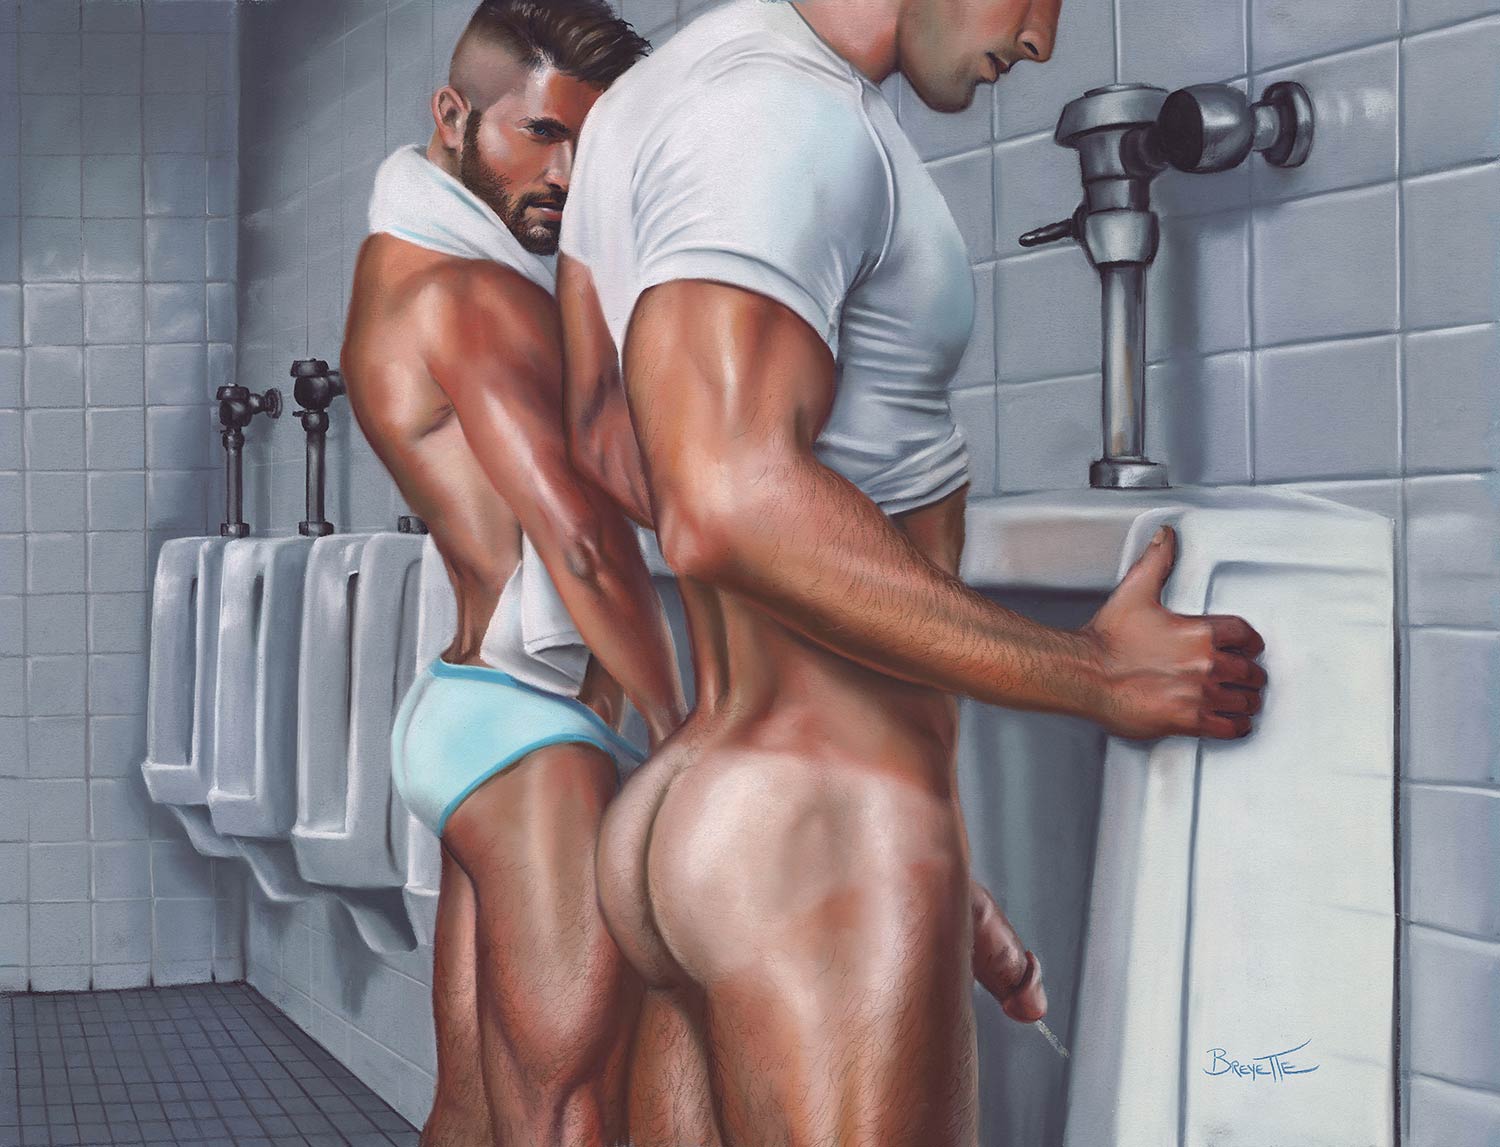 Men's Room - Art of Michael Breyette